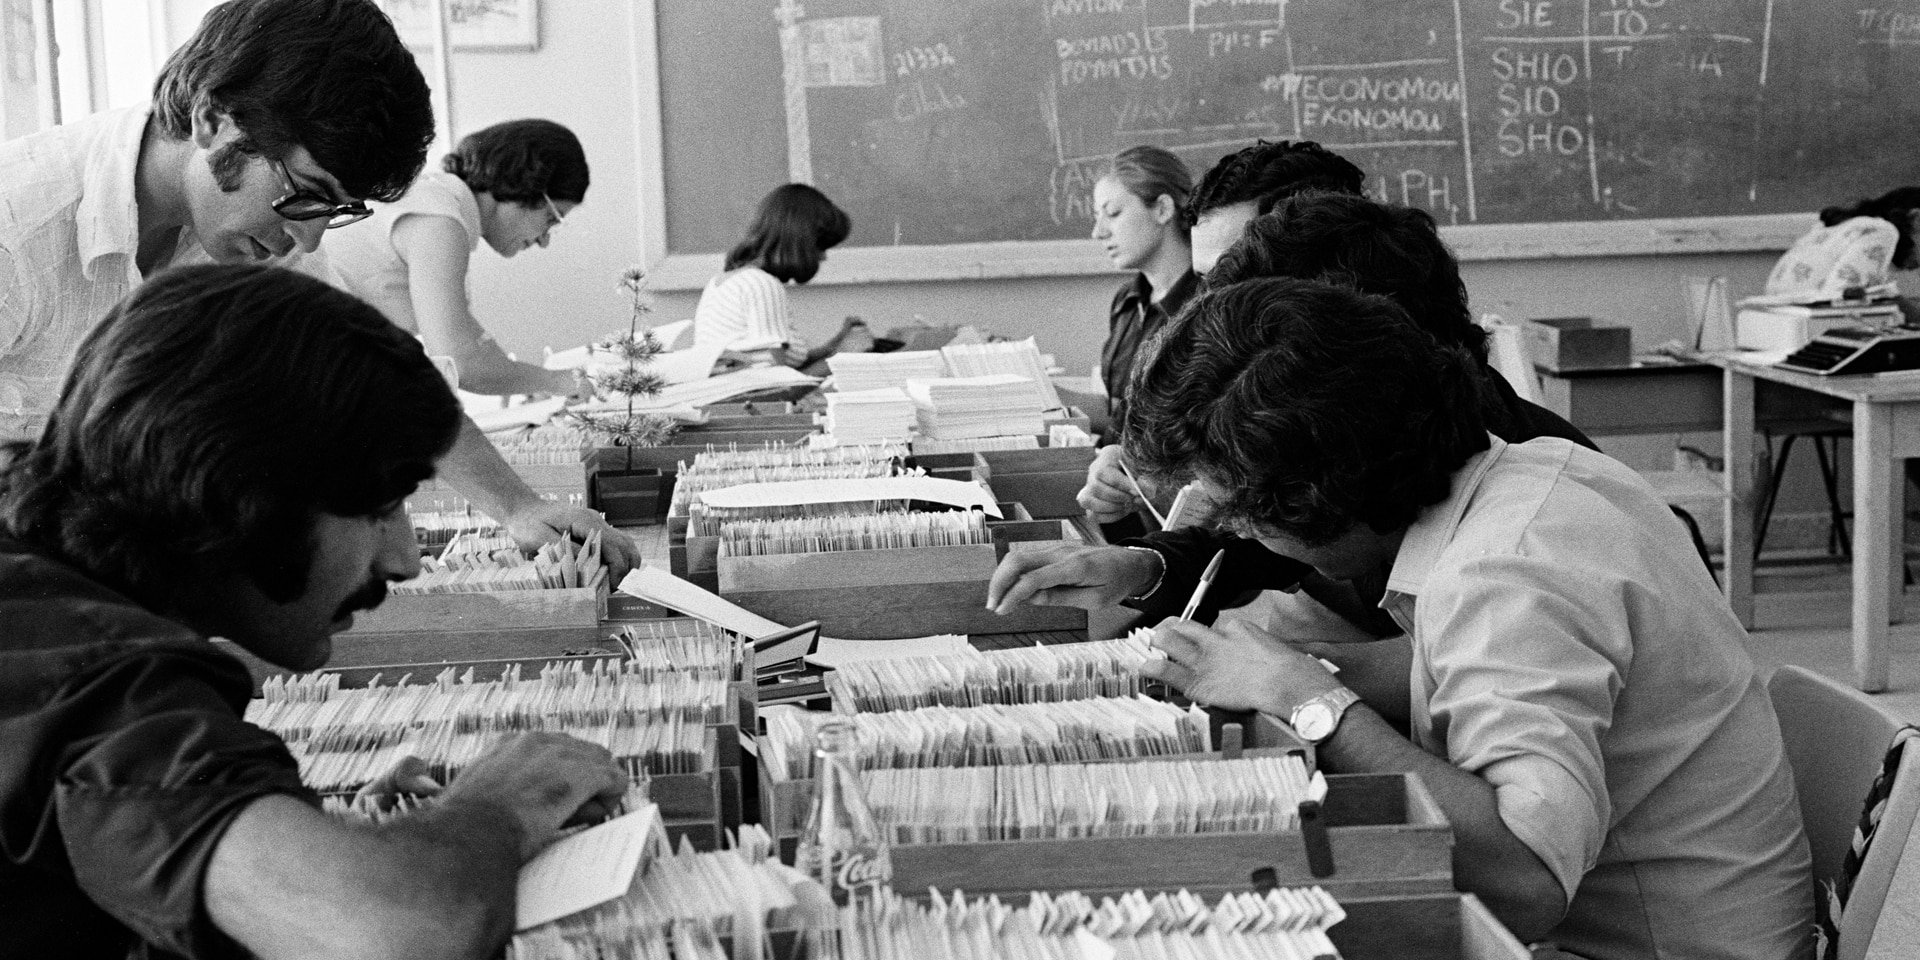 Das Bild, schwarz-weiss, zeigt einen Büroraum im Jahr 1974. Die Tische sind vollgestellt mit Karteikästen inkl. Karteikarten. Acht Personen arbeiten konzentriert daran.  